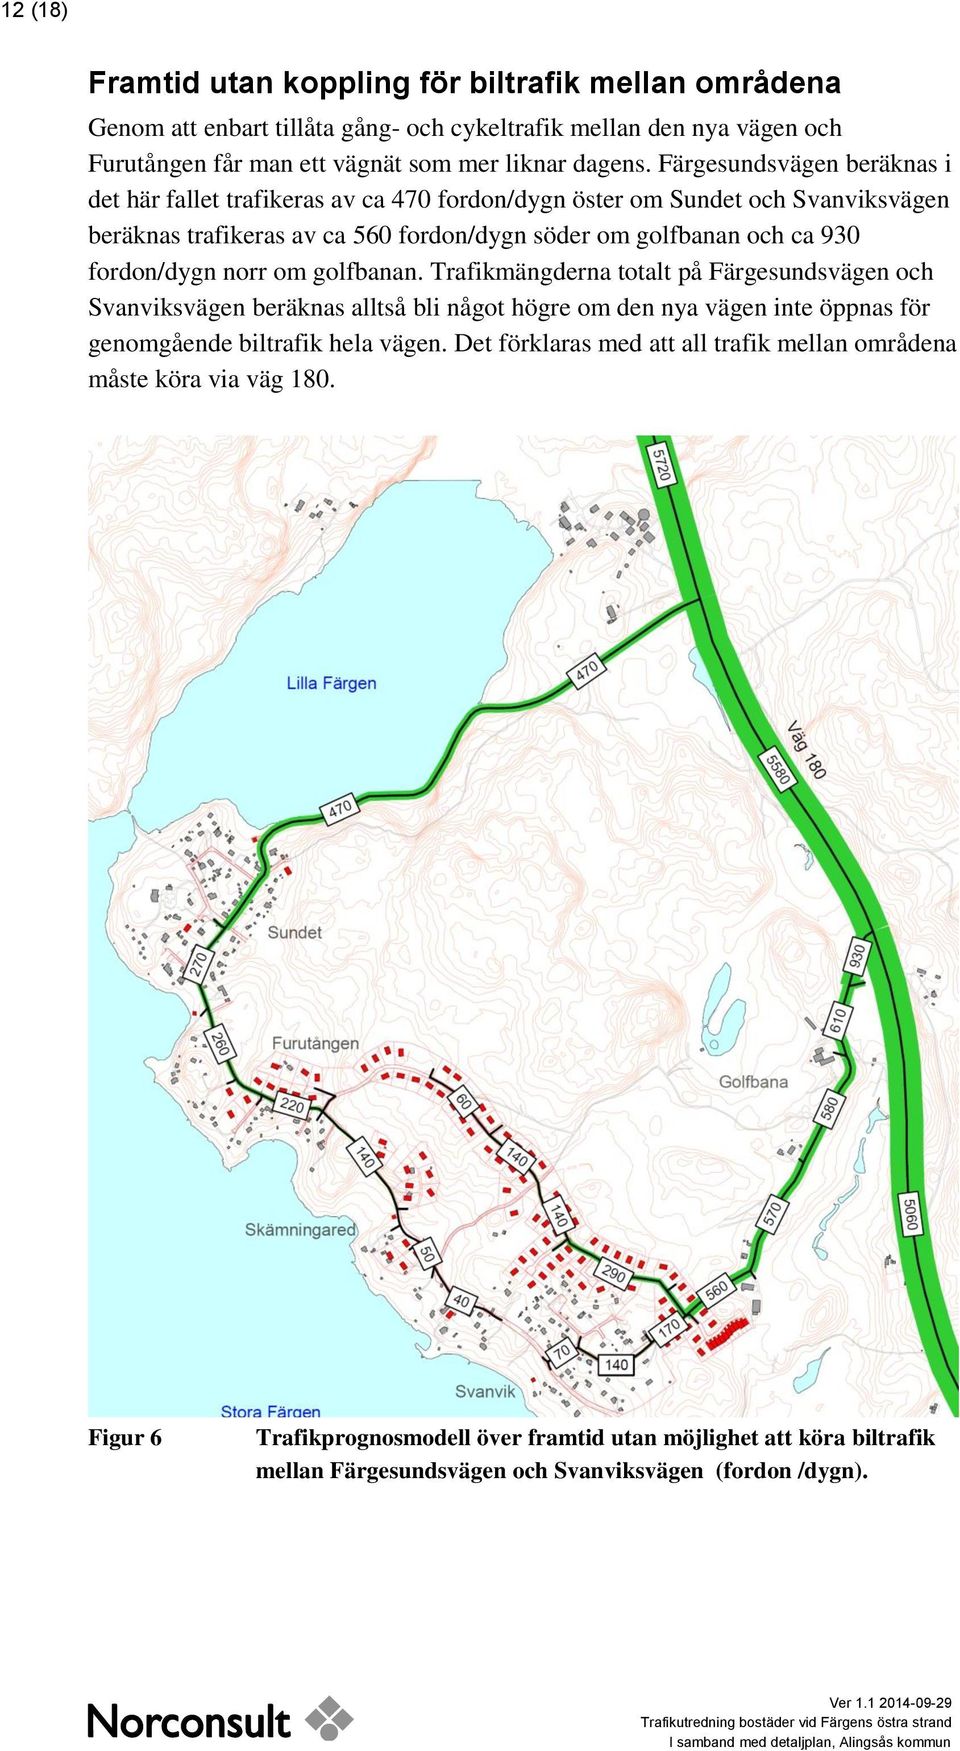 fordon/dygn norr om golfbanan. Trafikmängderna totalt på Färgesundsvägen och Svanviksvägen beräknas alltså bli något högre om den nya vägen inte öppnas för genomgående biltrafik hela vägen.